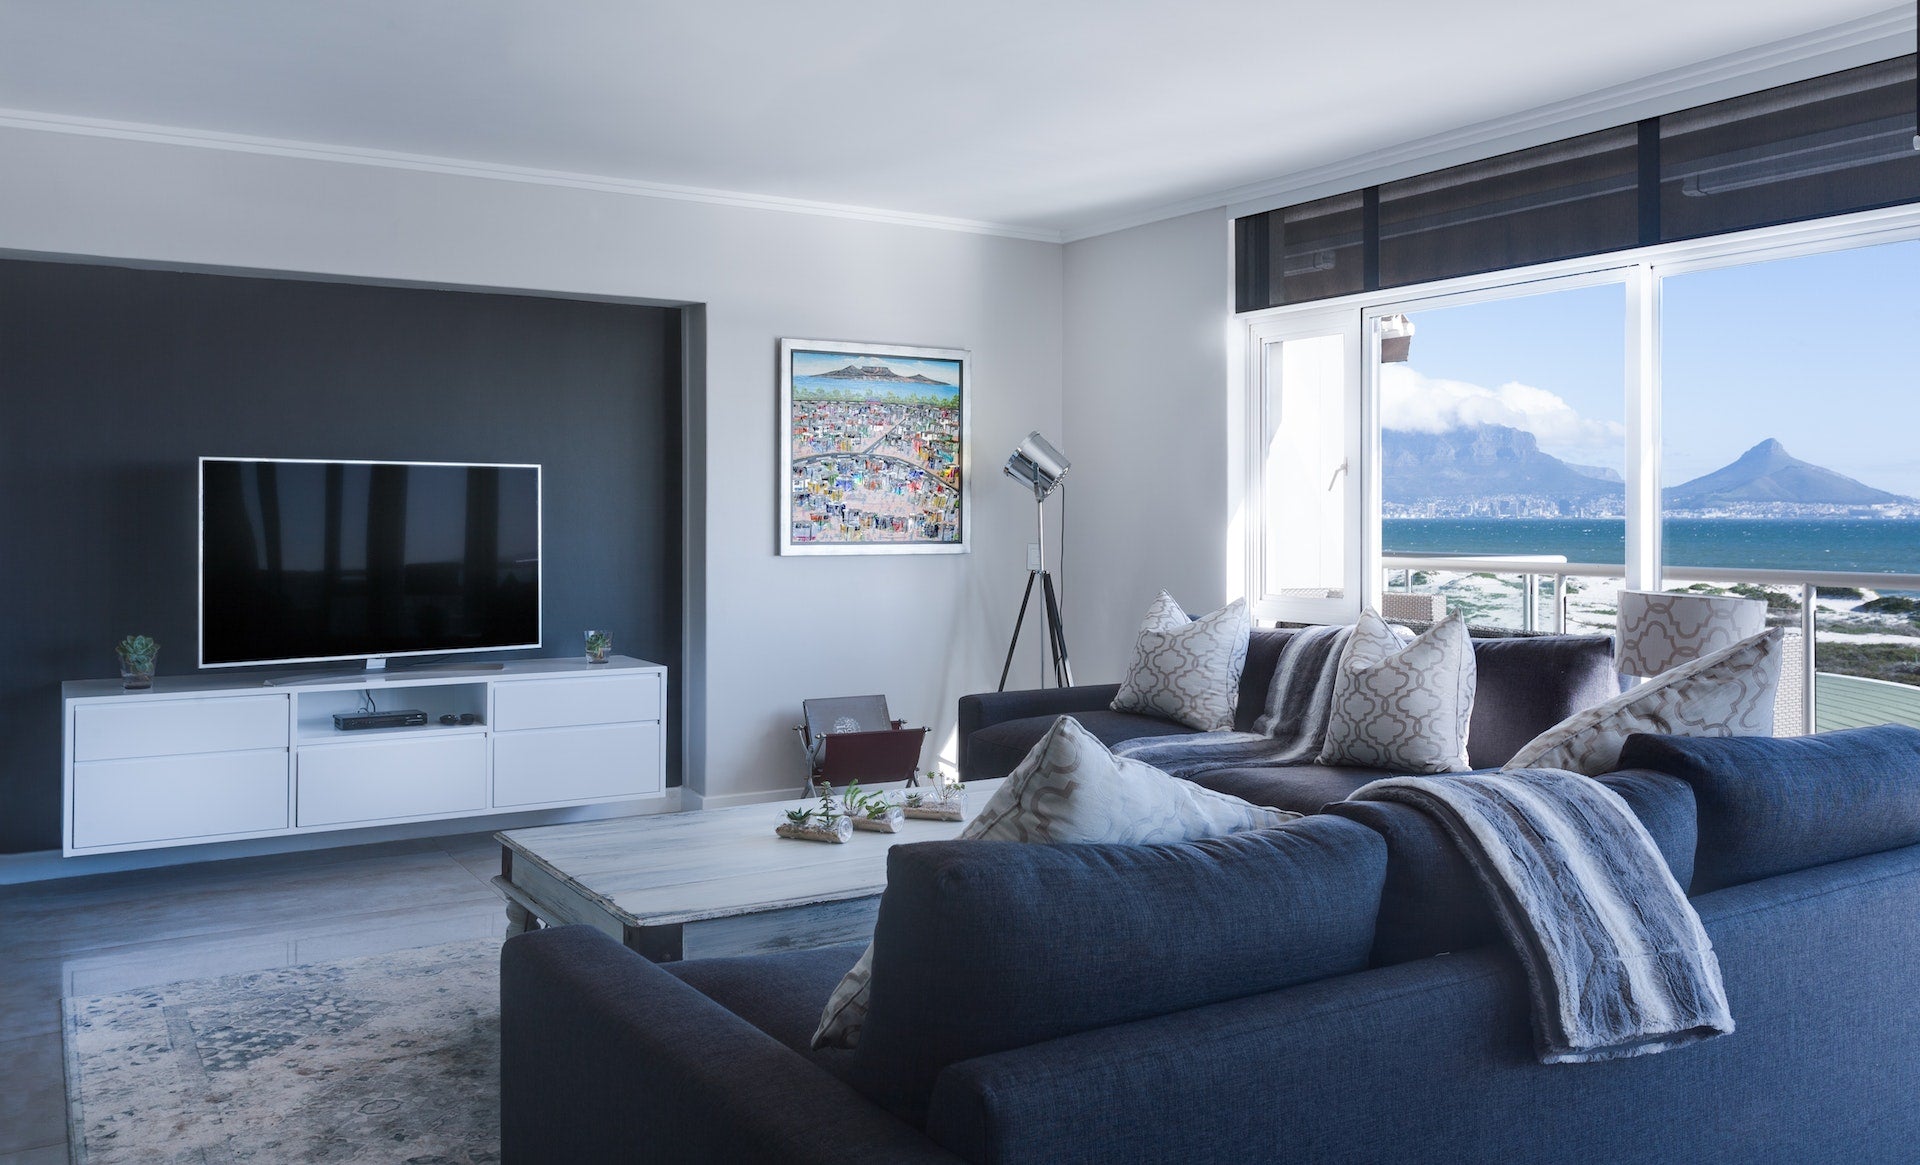 En moderne stue med en stor sofa, TV, pynteputer, pledd og en vakker utsikt mot havet.